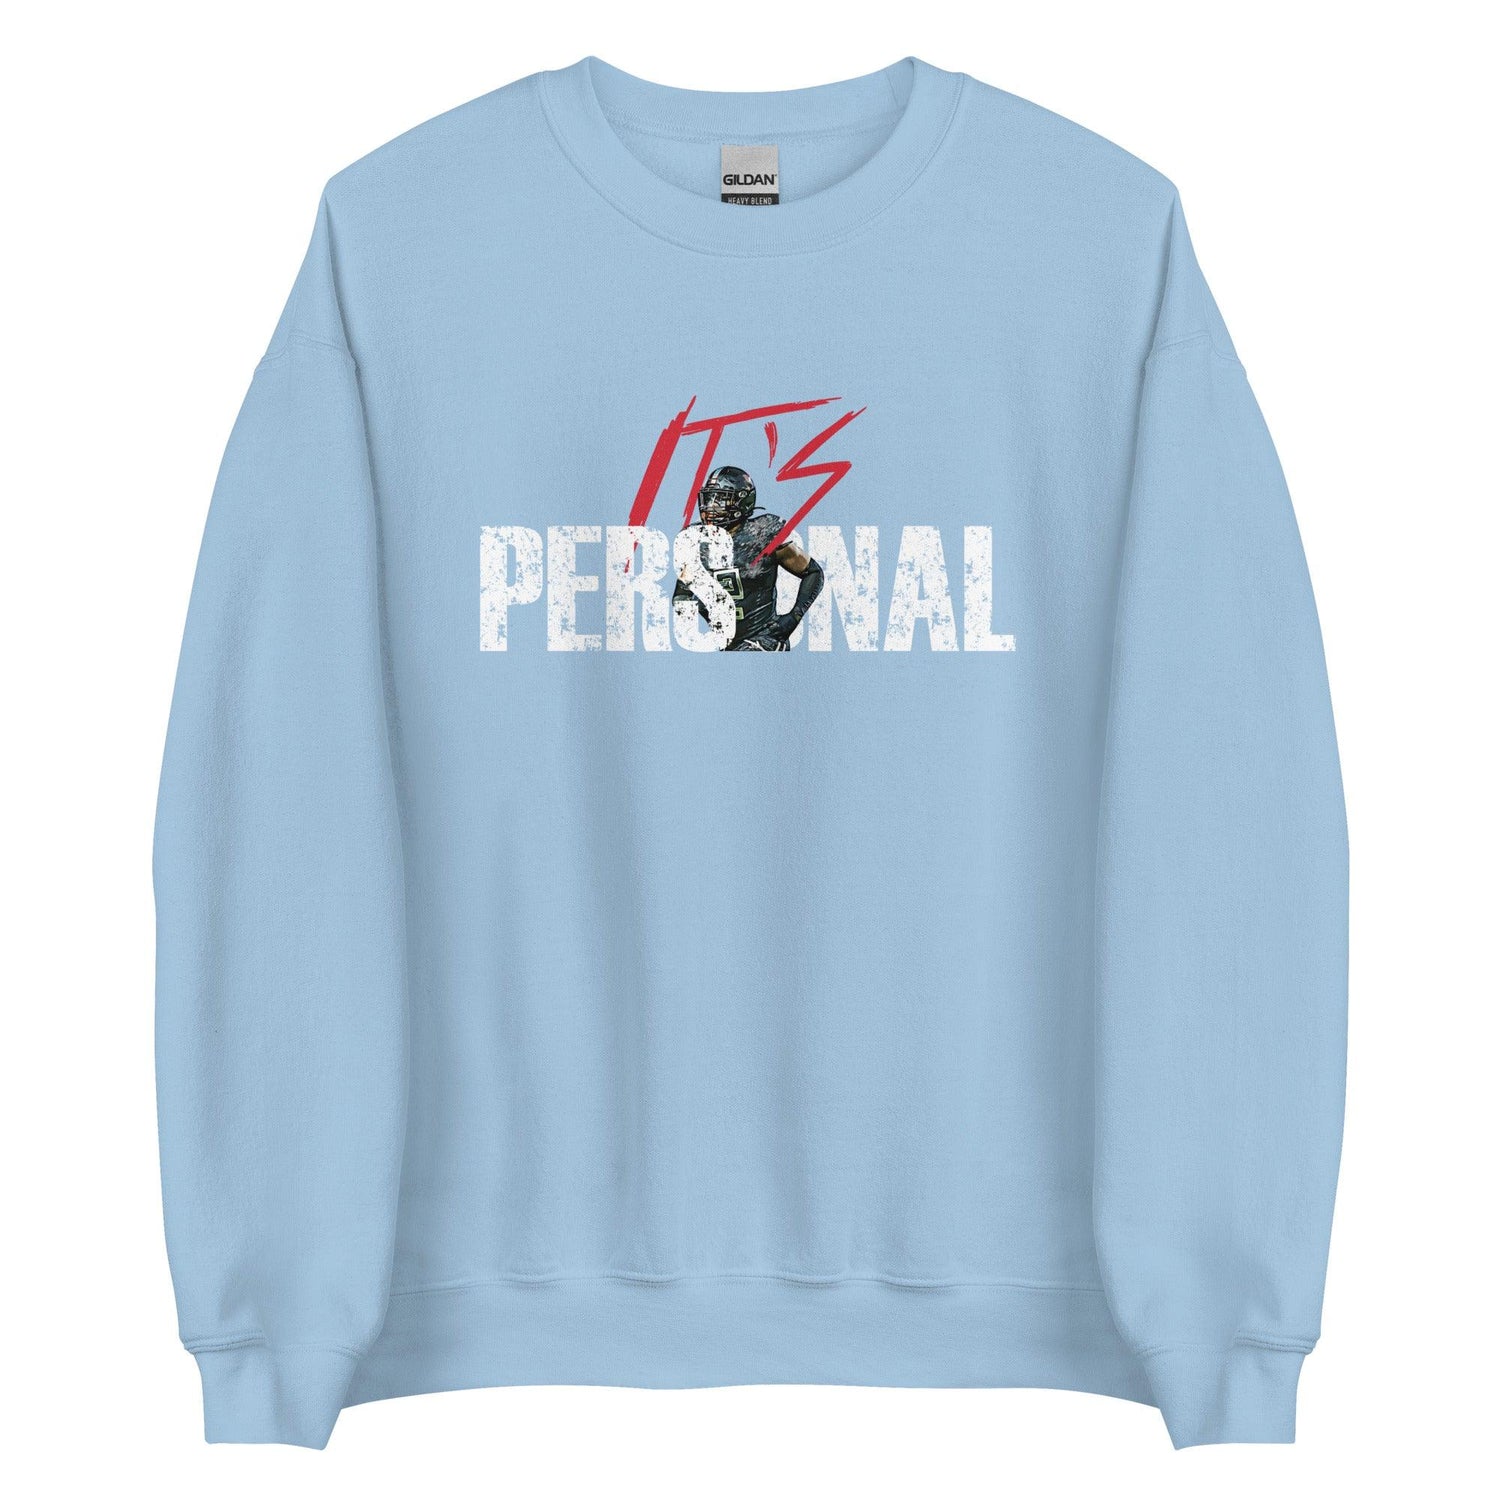 Kailon Davis "Its Personal" Sweatshirt - Fan Arch